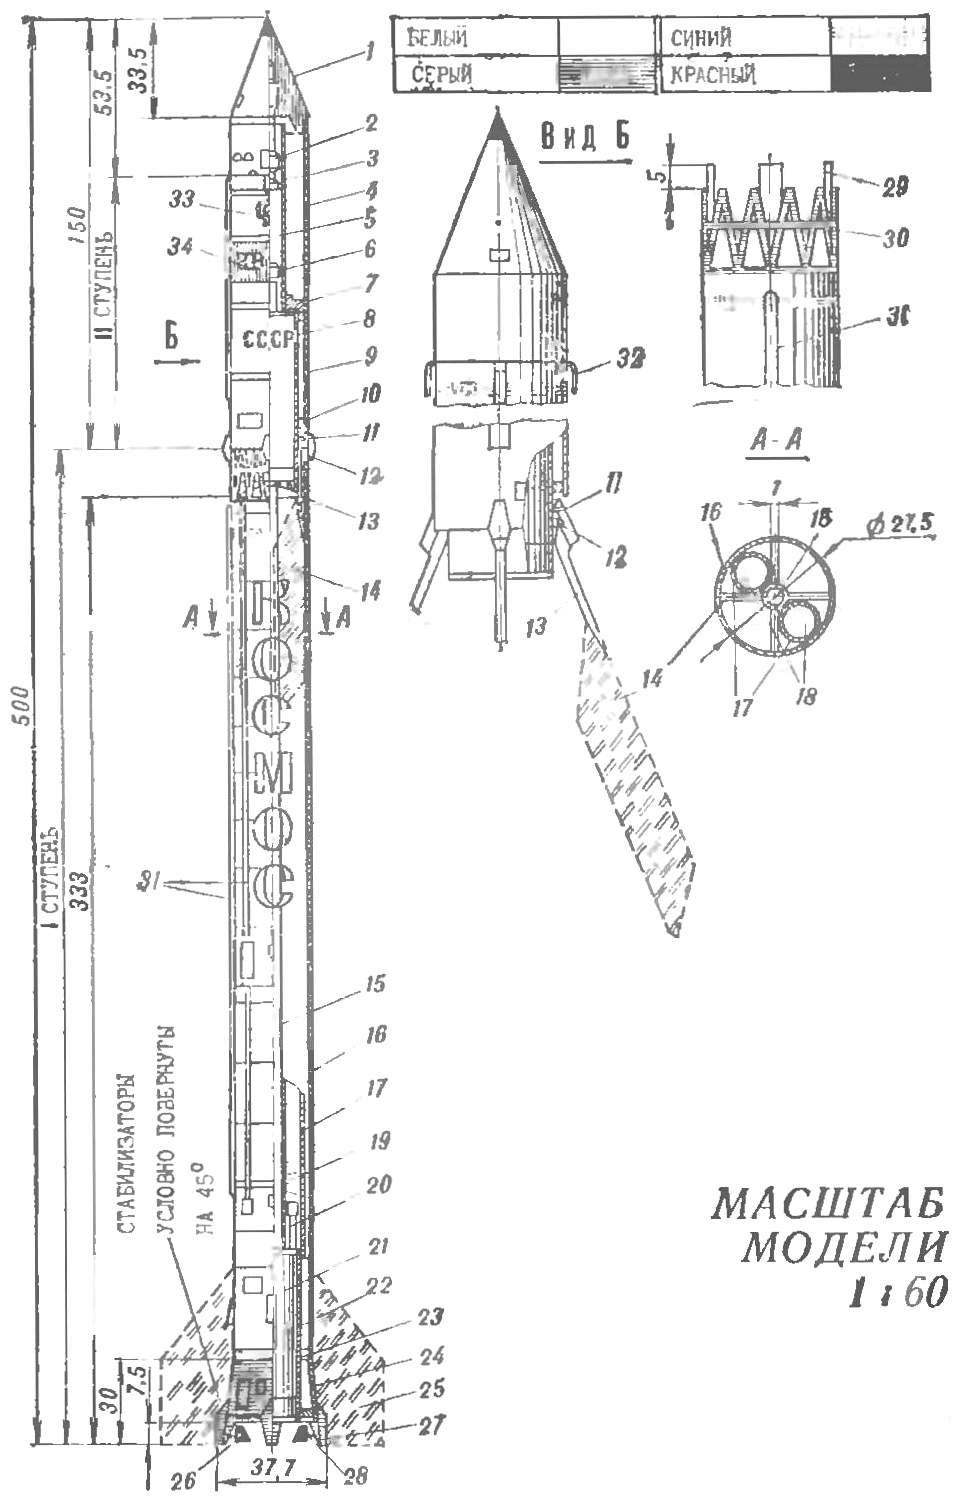 Fig. 1. MODEL-COPY OF THE SOVIET ROCKET CARRIER 